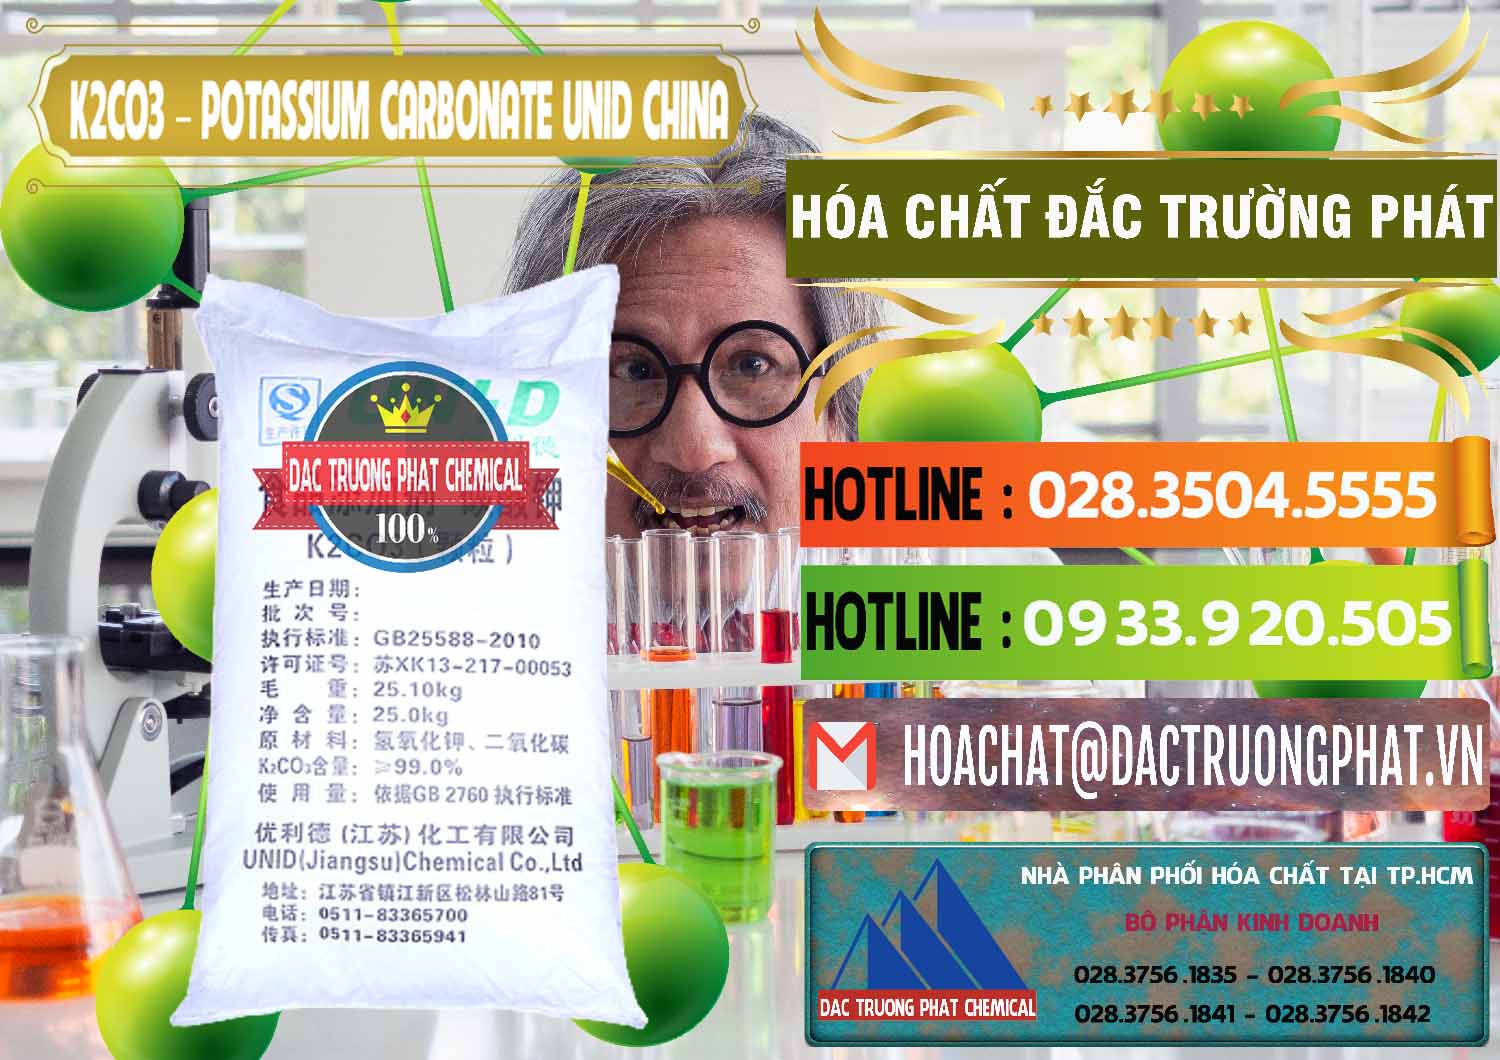 Đơn vị bán & cung ứng K2Co3 – Potassium Carbonate UNID Trung Quốc China - 0475 - Nhà cung cấp & bán hóa chất tại TP.HCM - cungcaphoachat.com.vn